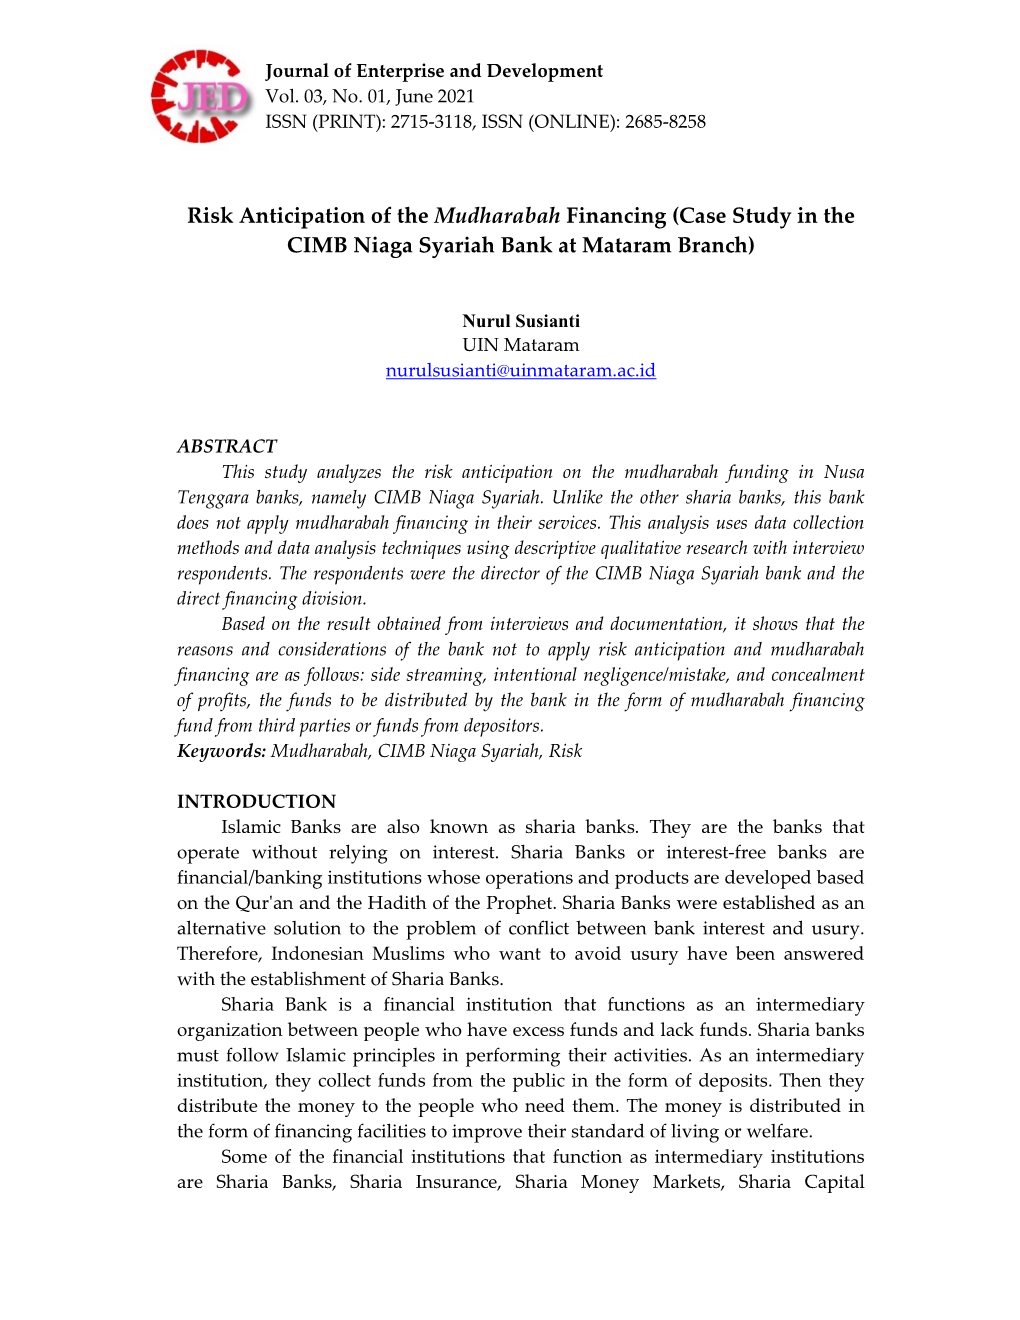 Risk Anticipation of the Mudharabah Financing (Case Study in the CIMB Niaga Syariah Bank at Mataram Branch)